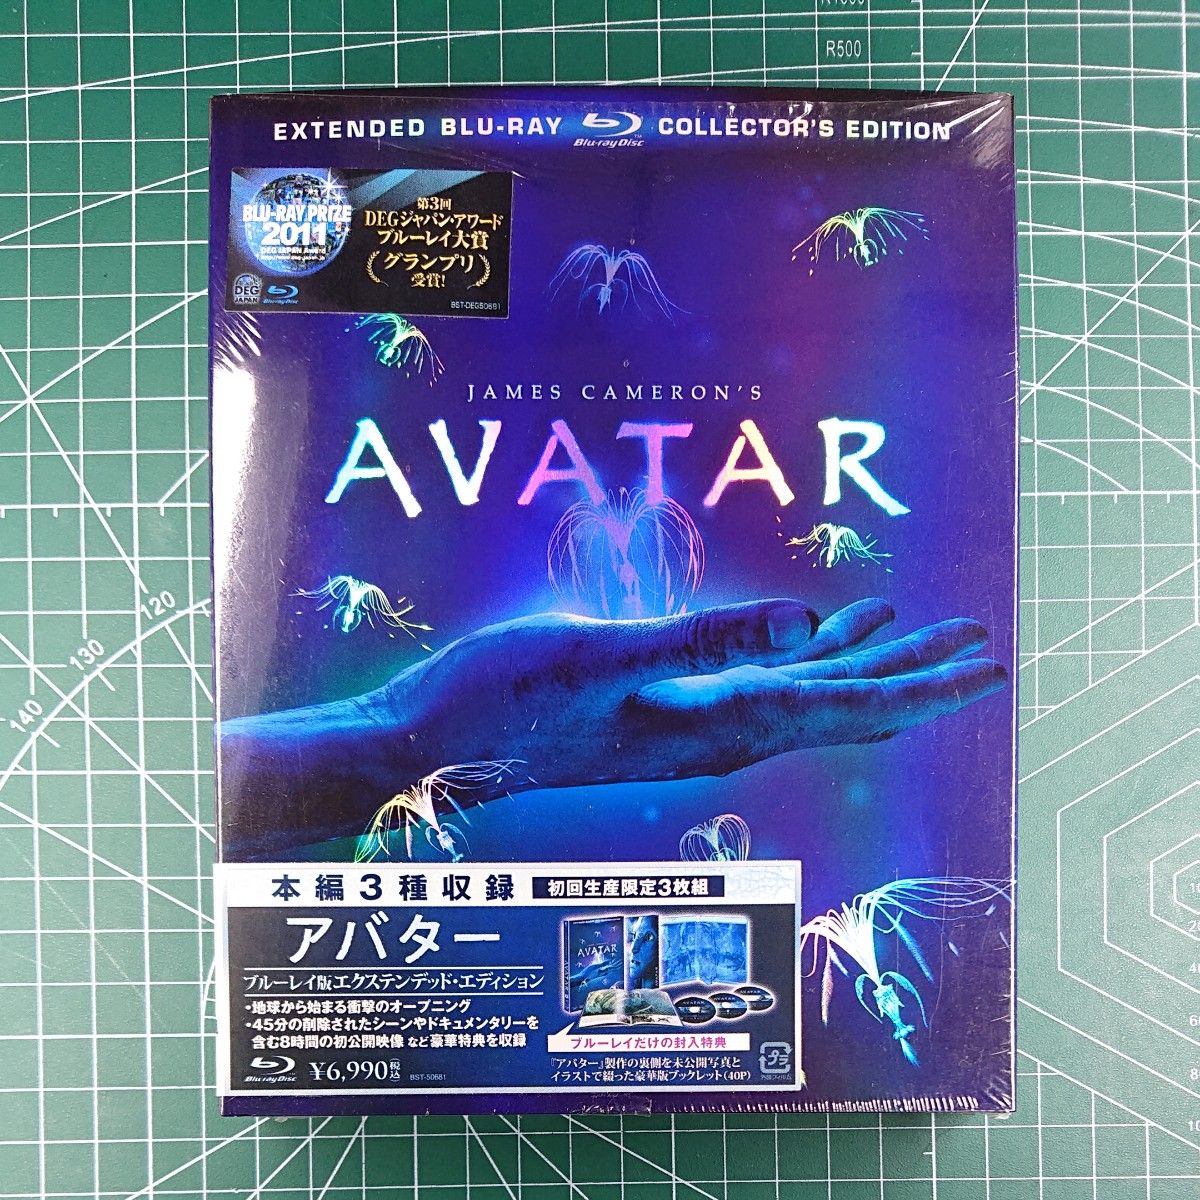 アバター AVATAR ブルーレイディスク版エクステンデットエディション 3枚組 小冊子付き 初回限定生産